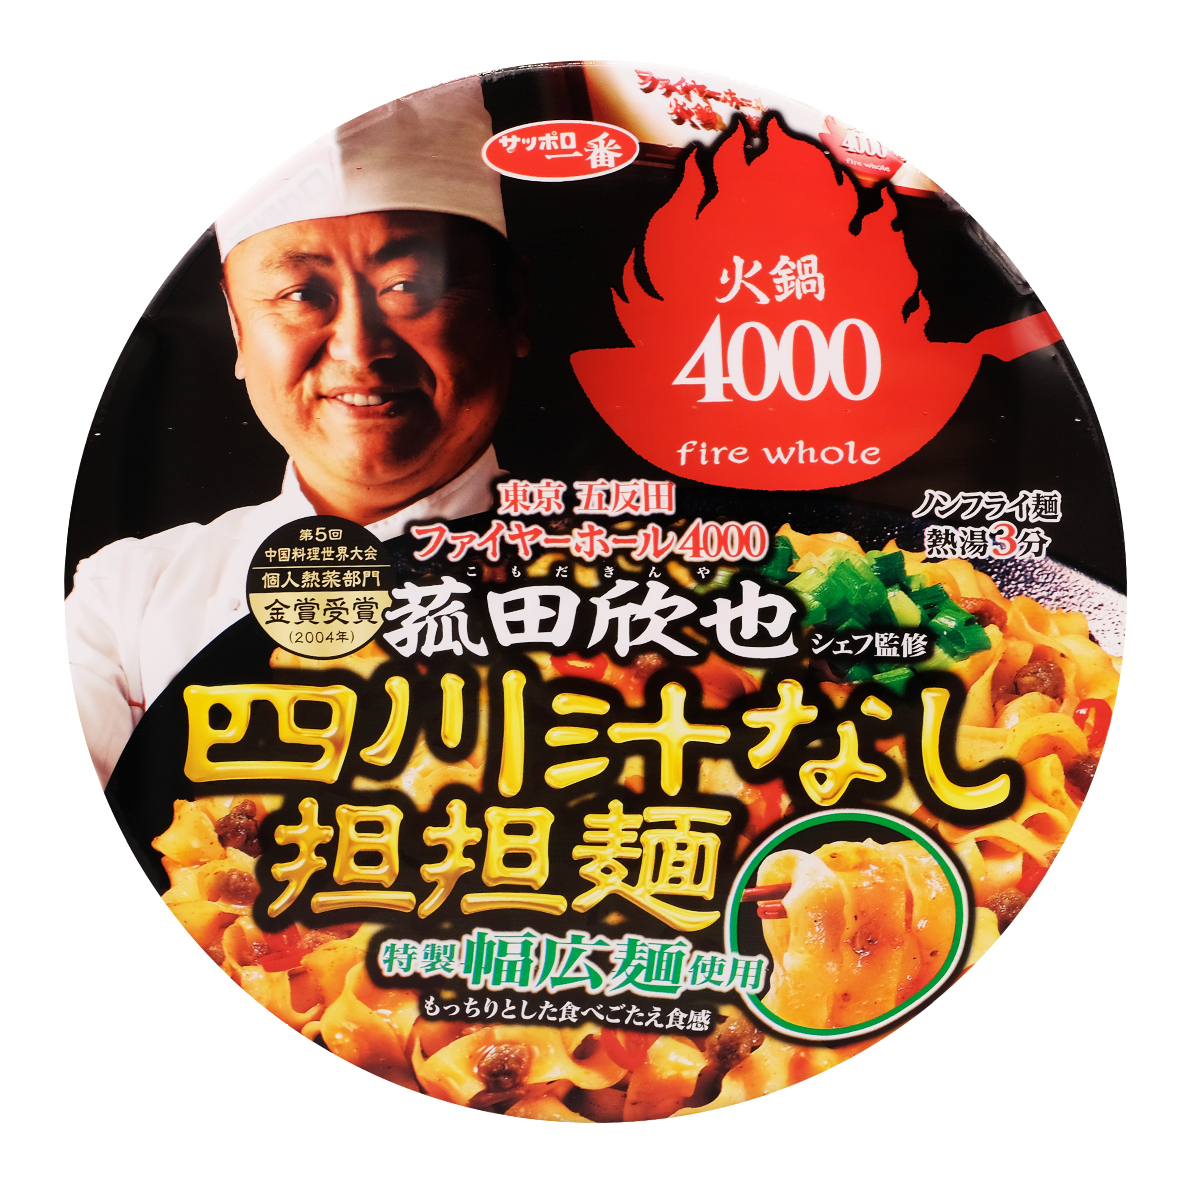 Fire whole4000 Soupless Dandan Noodles